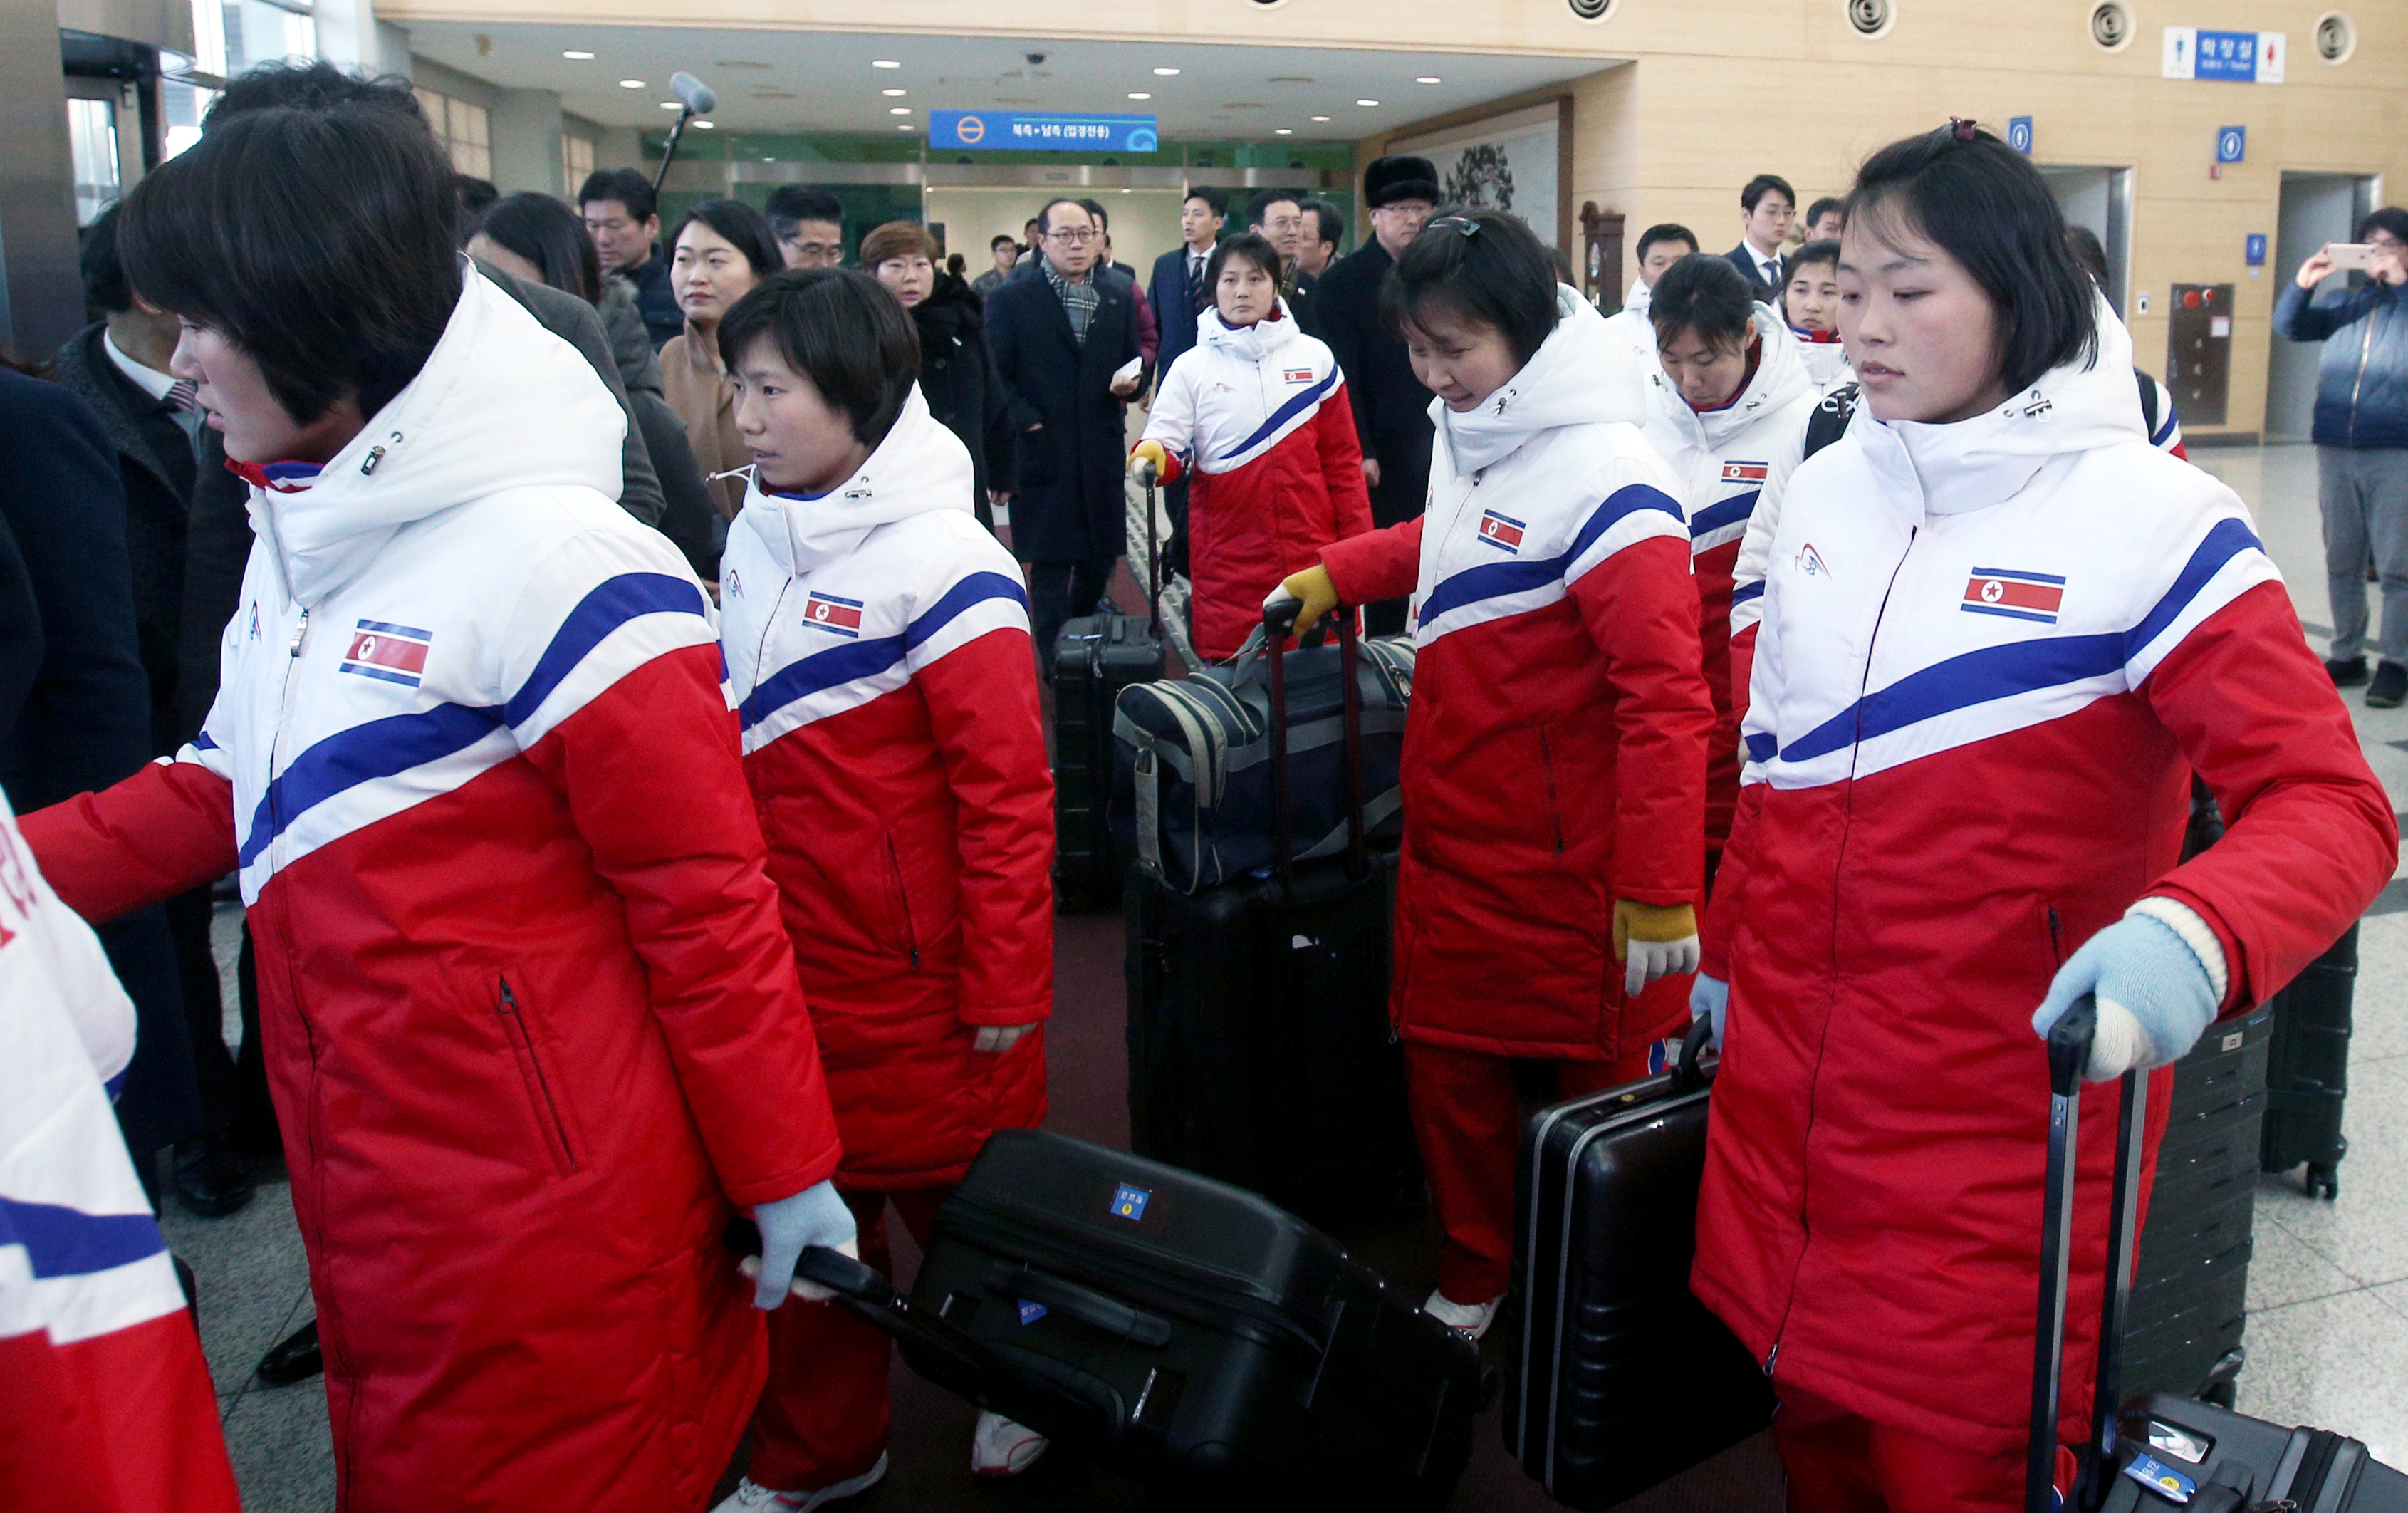 رياضيو كوريا الشمالية يستعدون للمشاركة فى دورة الألعاب الأولمبية